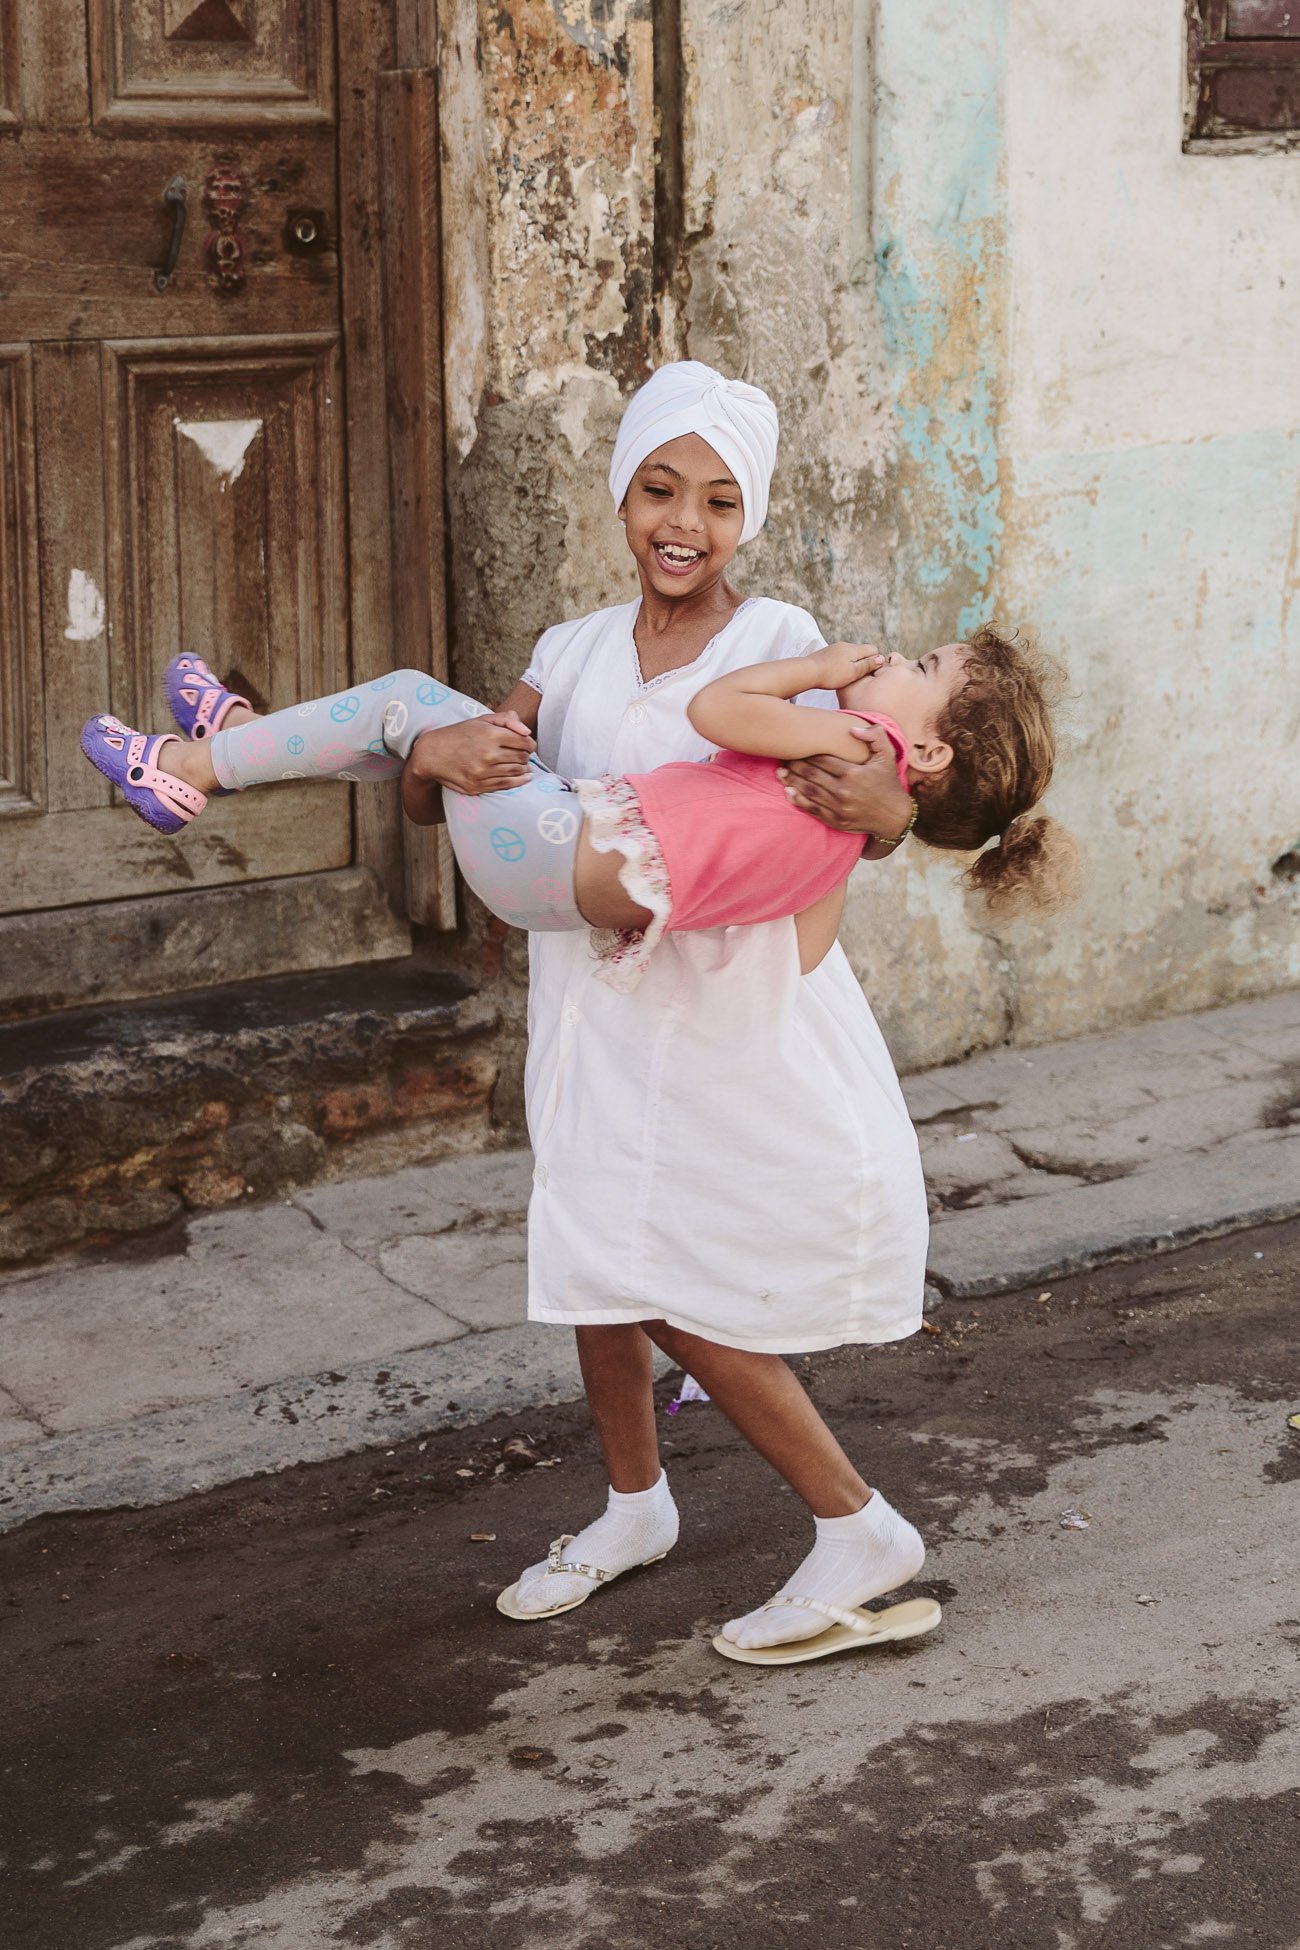 Kids play in the streets in Havana Cuba